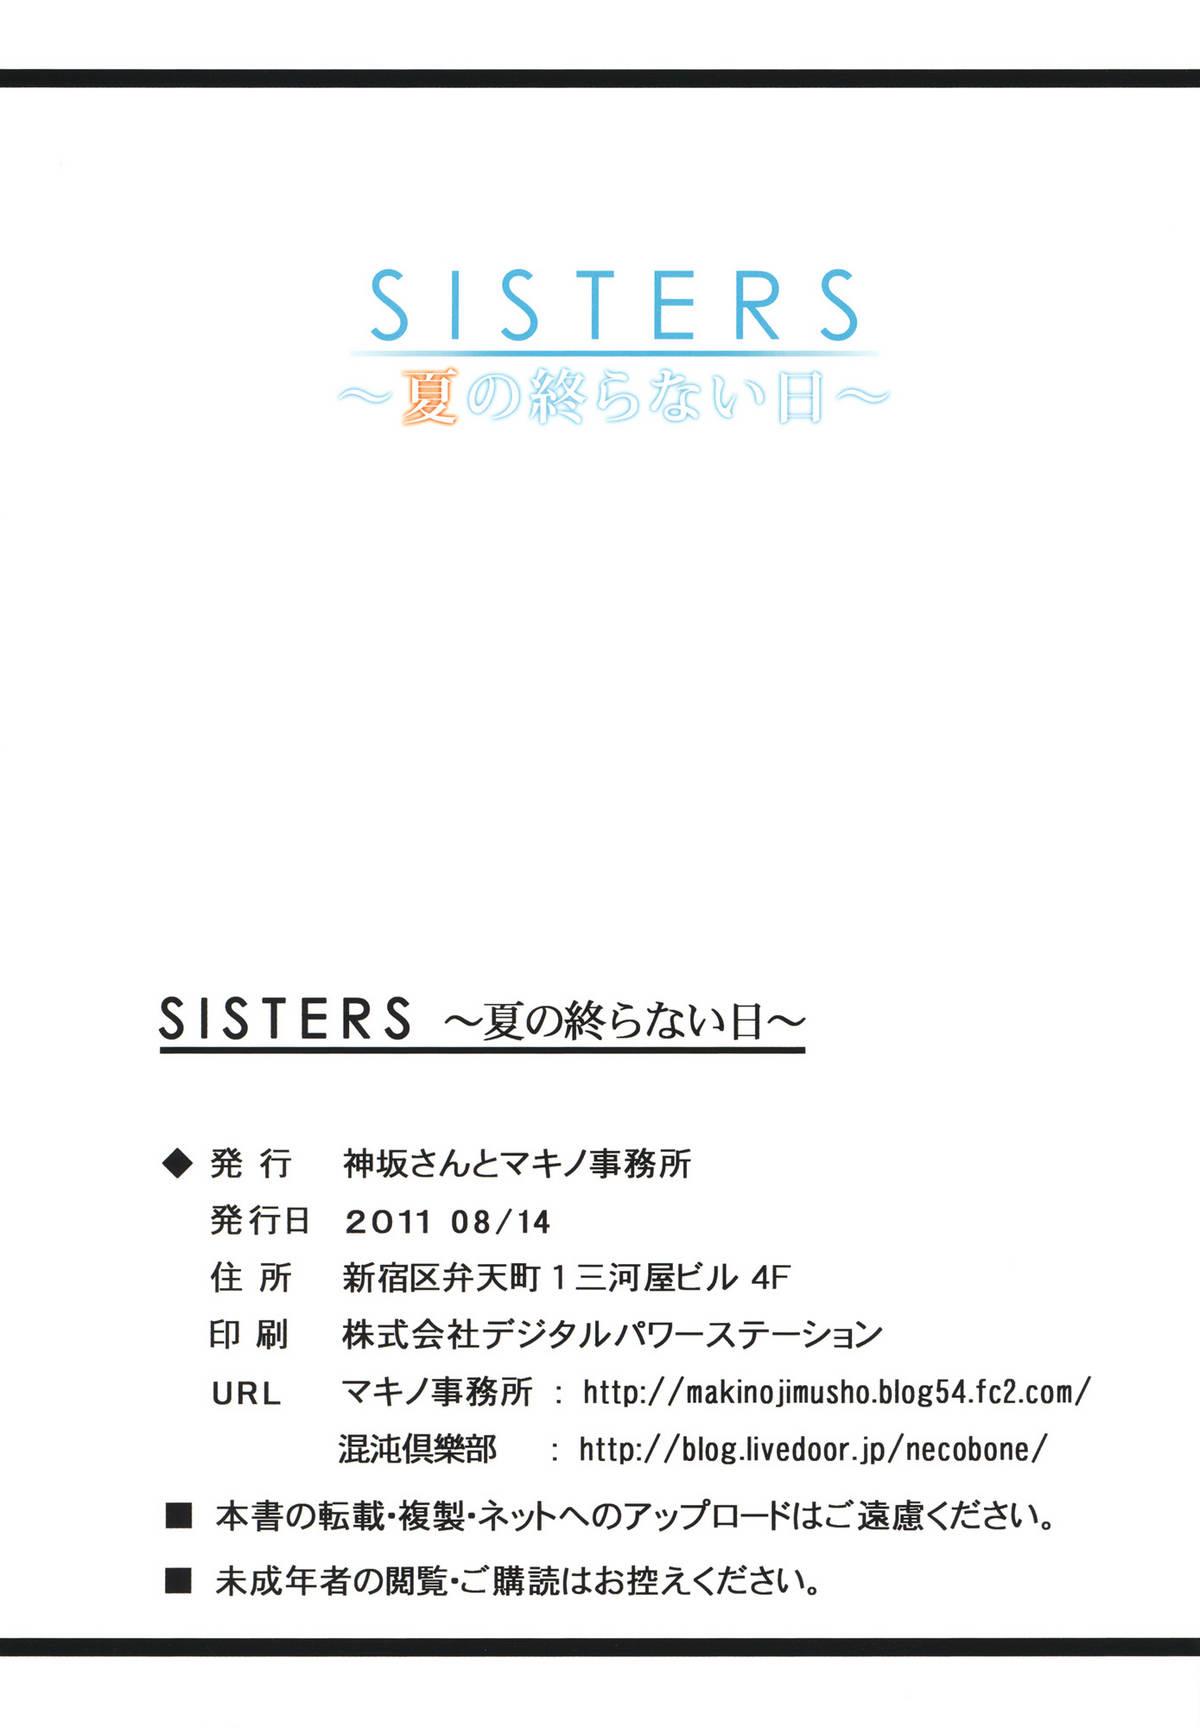 Hot Girl Fuck SISTERS - Kakusareta Kioku, Natsu no Owaranai Hi - Sisters natsu no saigo no hi Cumload - Page 34